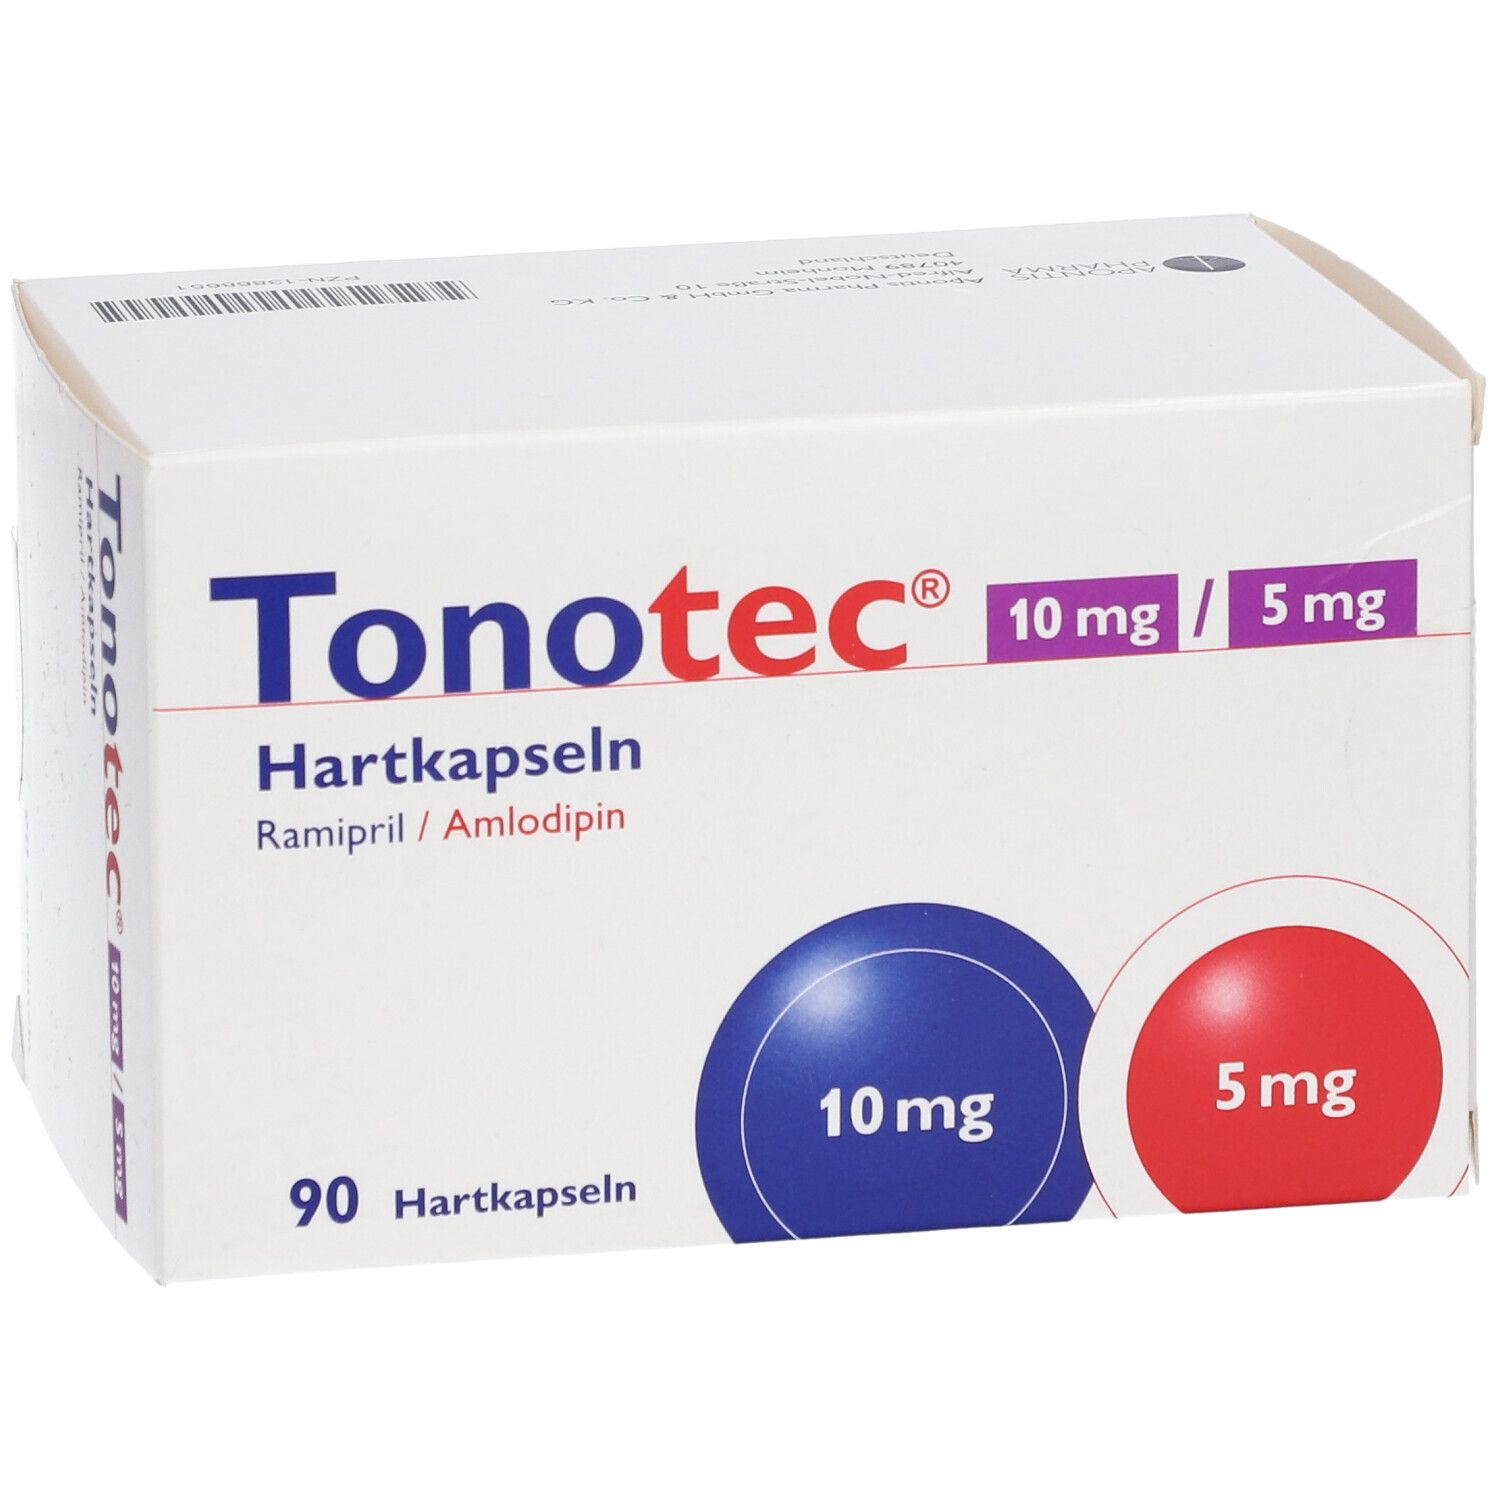 Tonotec® 10 mg/5 mg